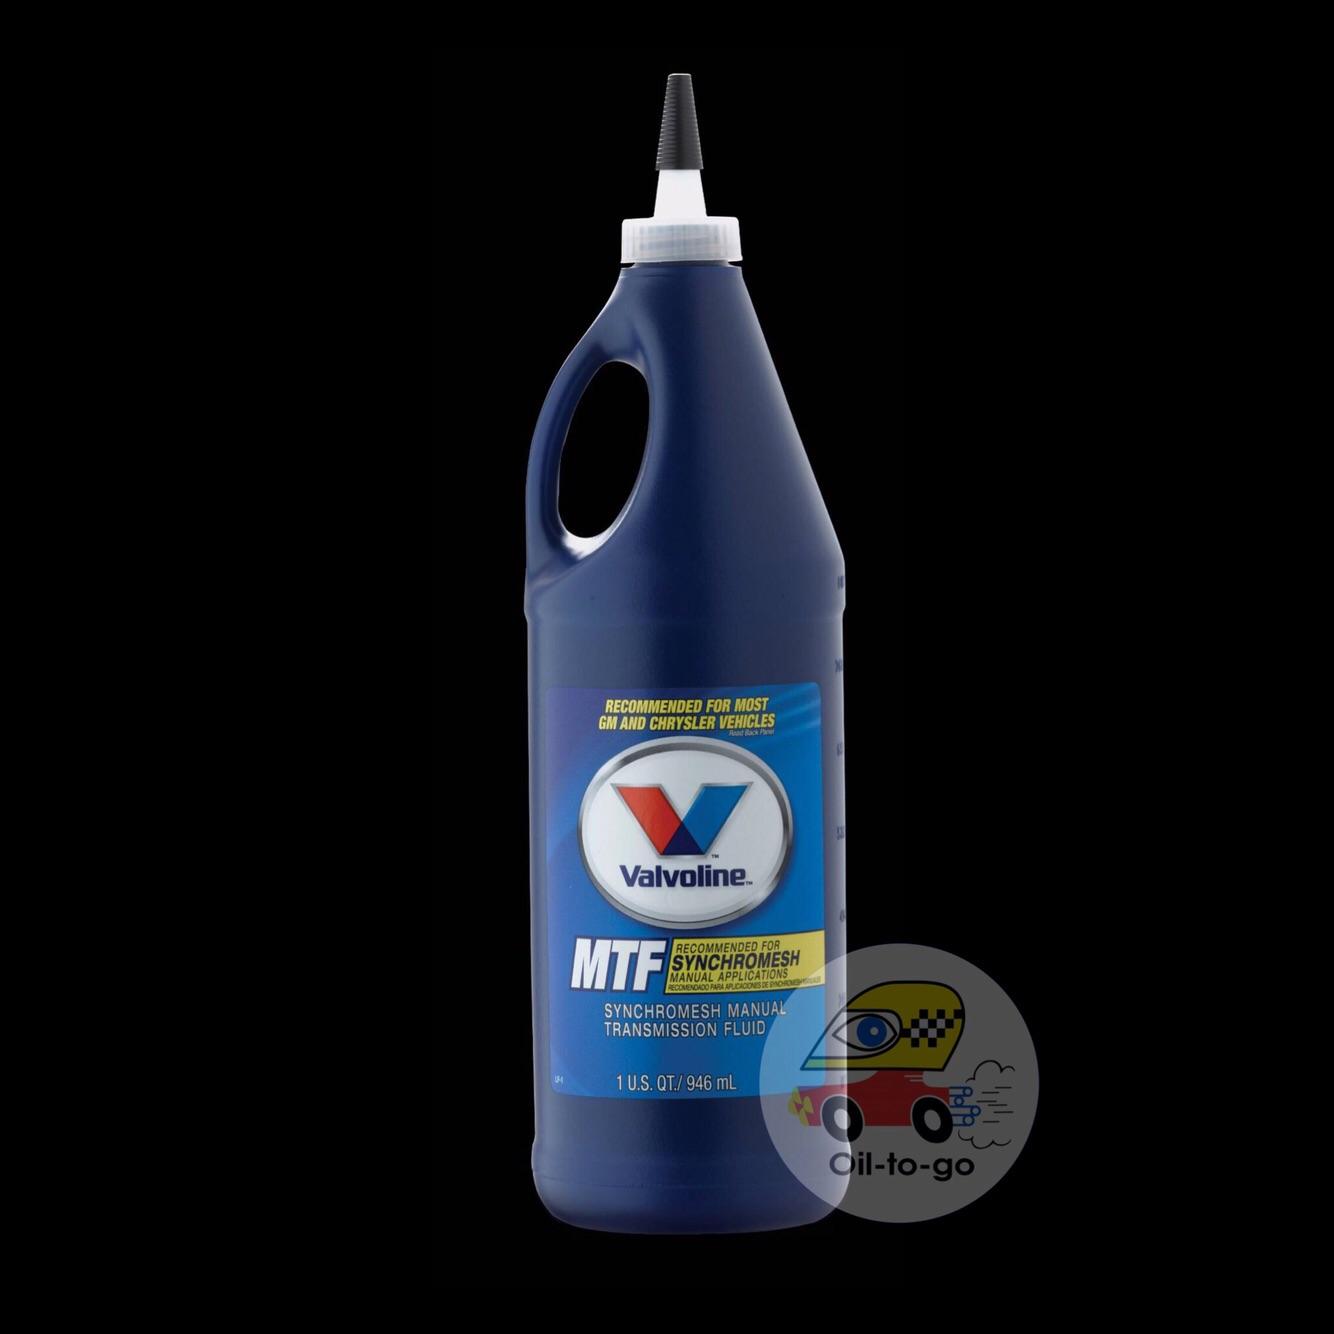 น้ำมันเกียร์ธรรมดา Valvoline MTF 75W-85 ขนาด 1 US.Qt